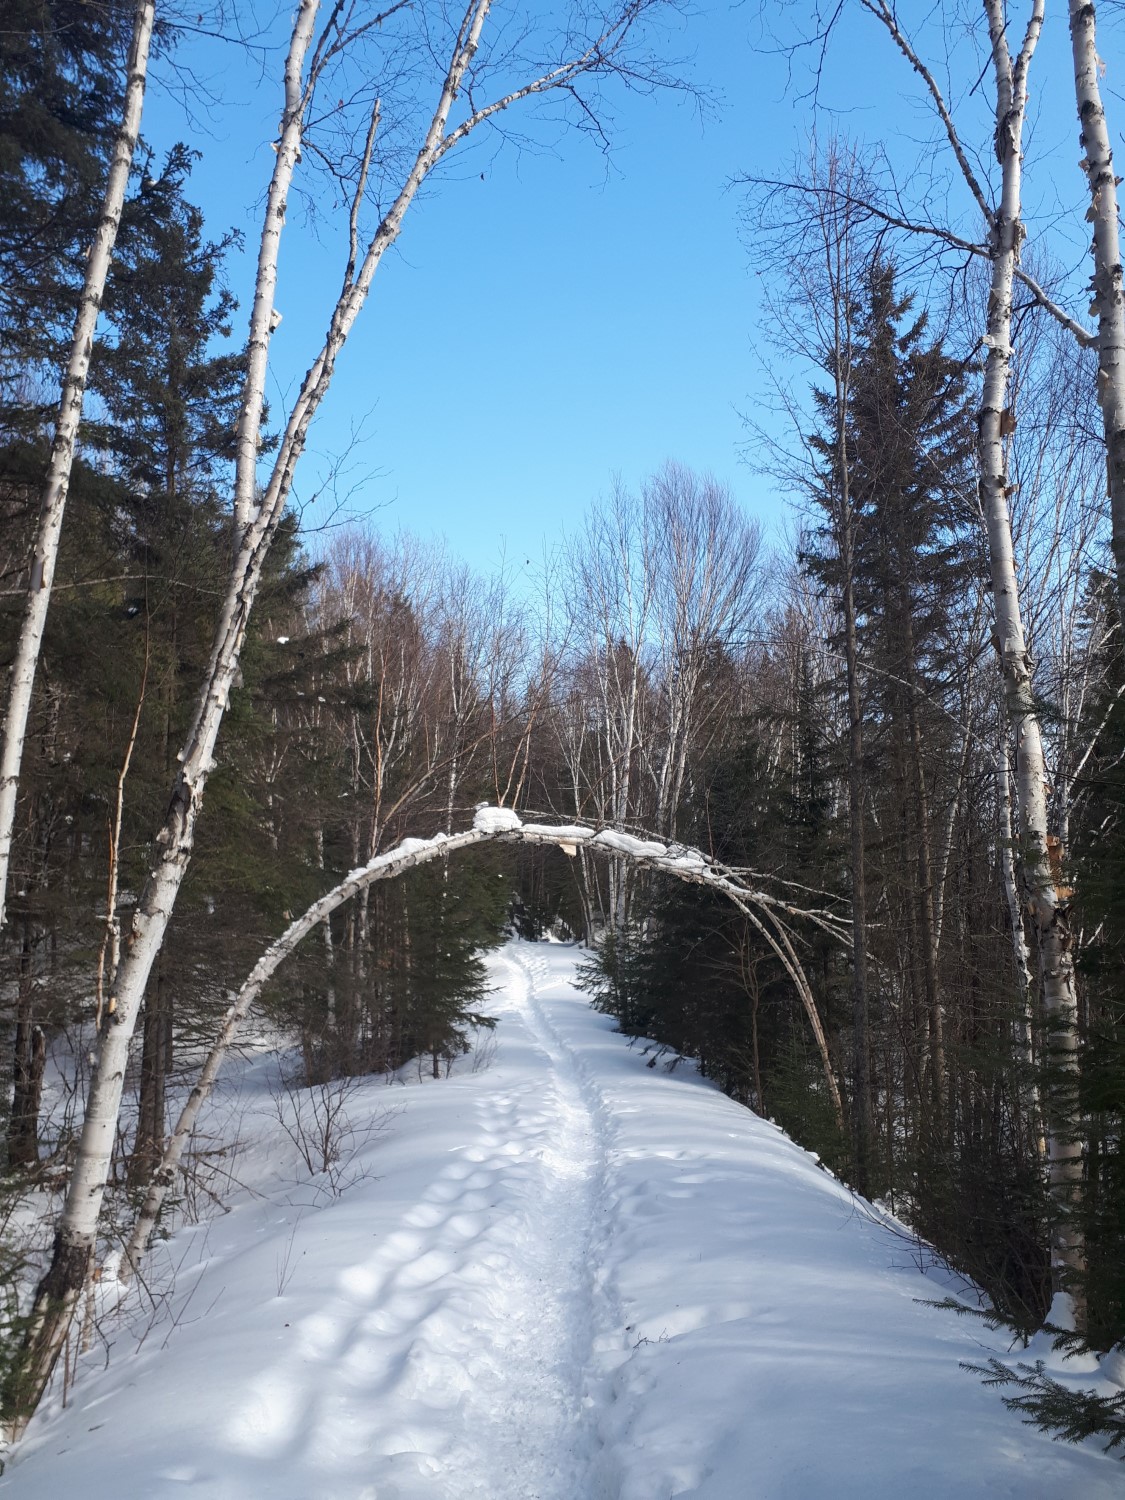 Un sentier enneigé traversant une forêt avec un bouleau arcbouté sur le sentier